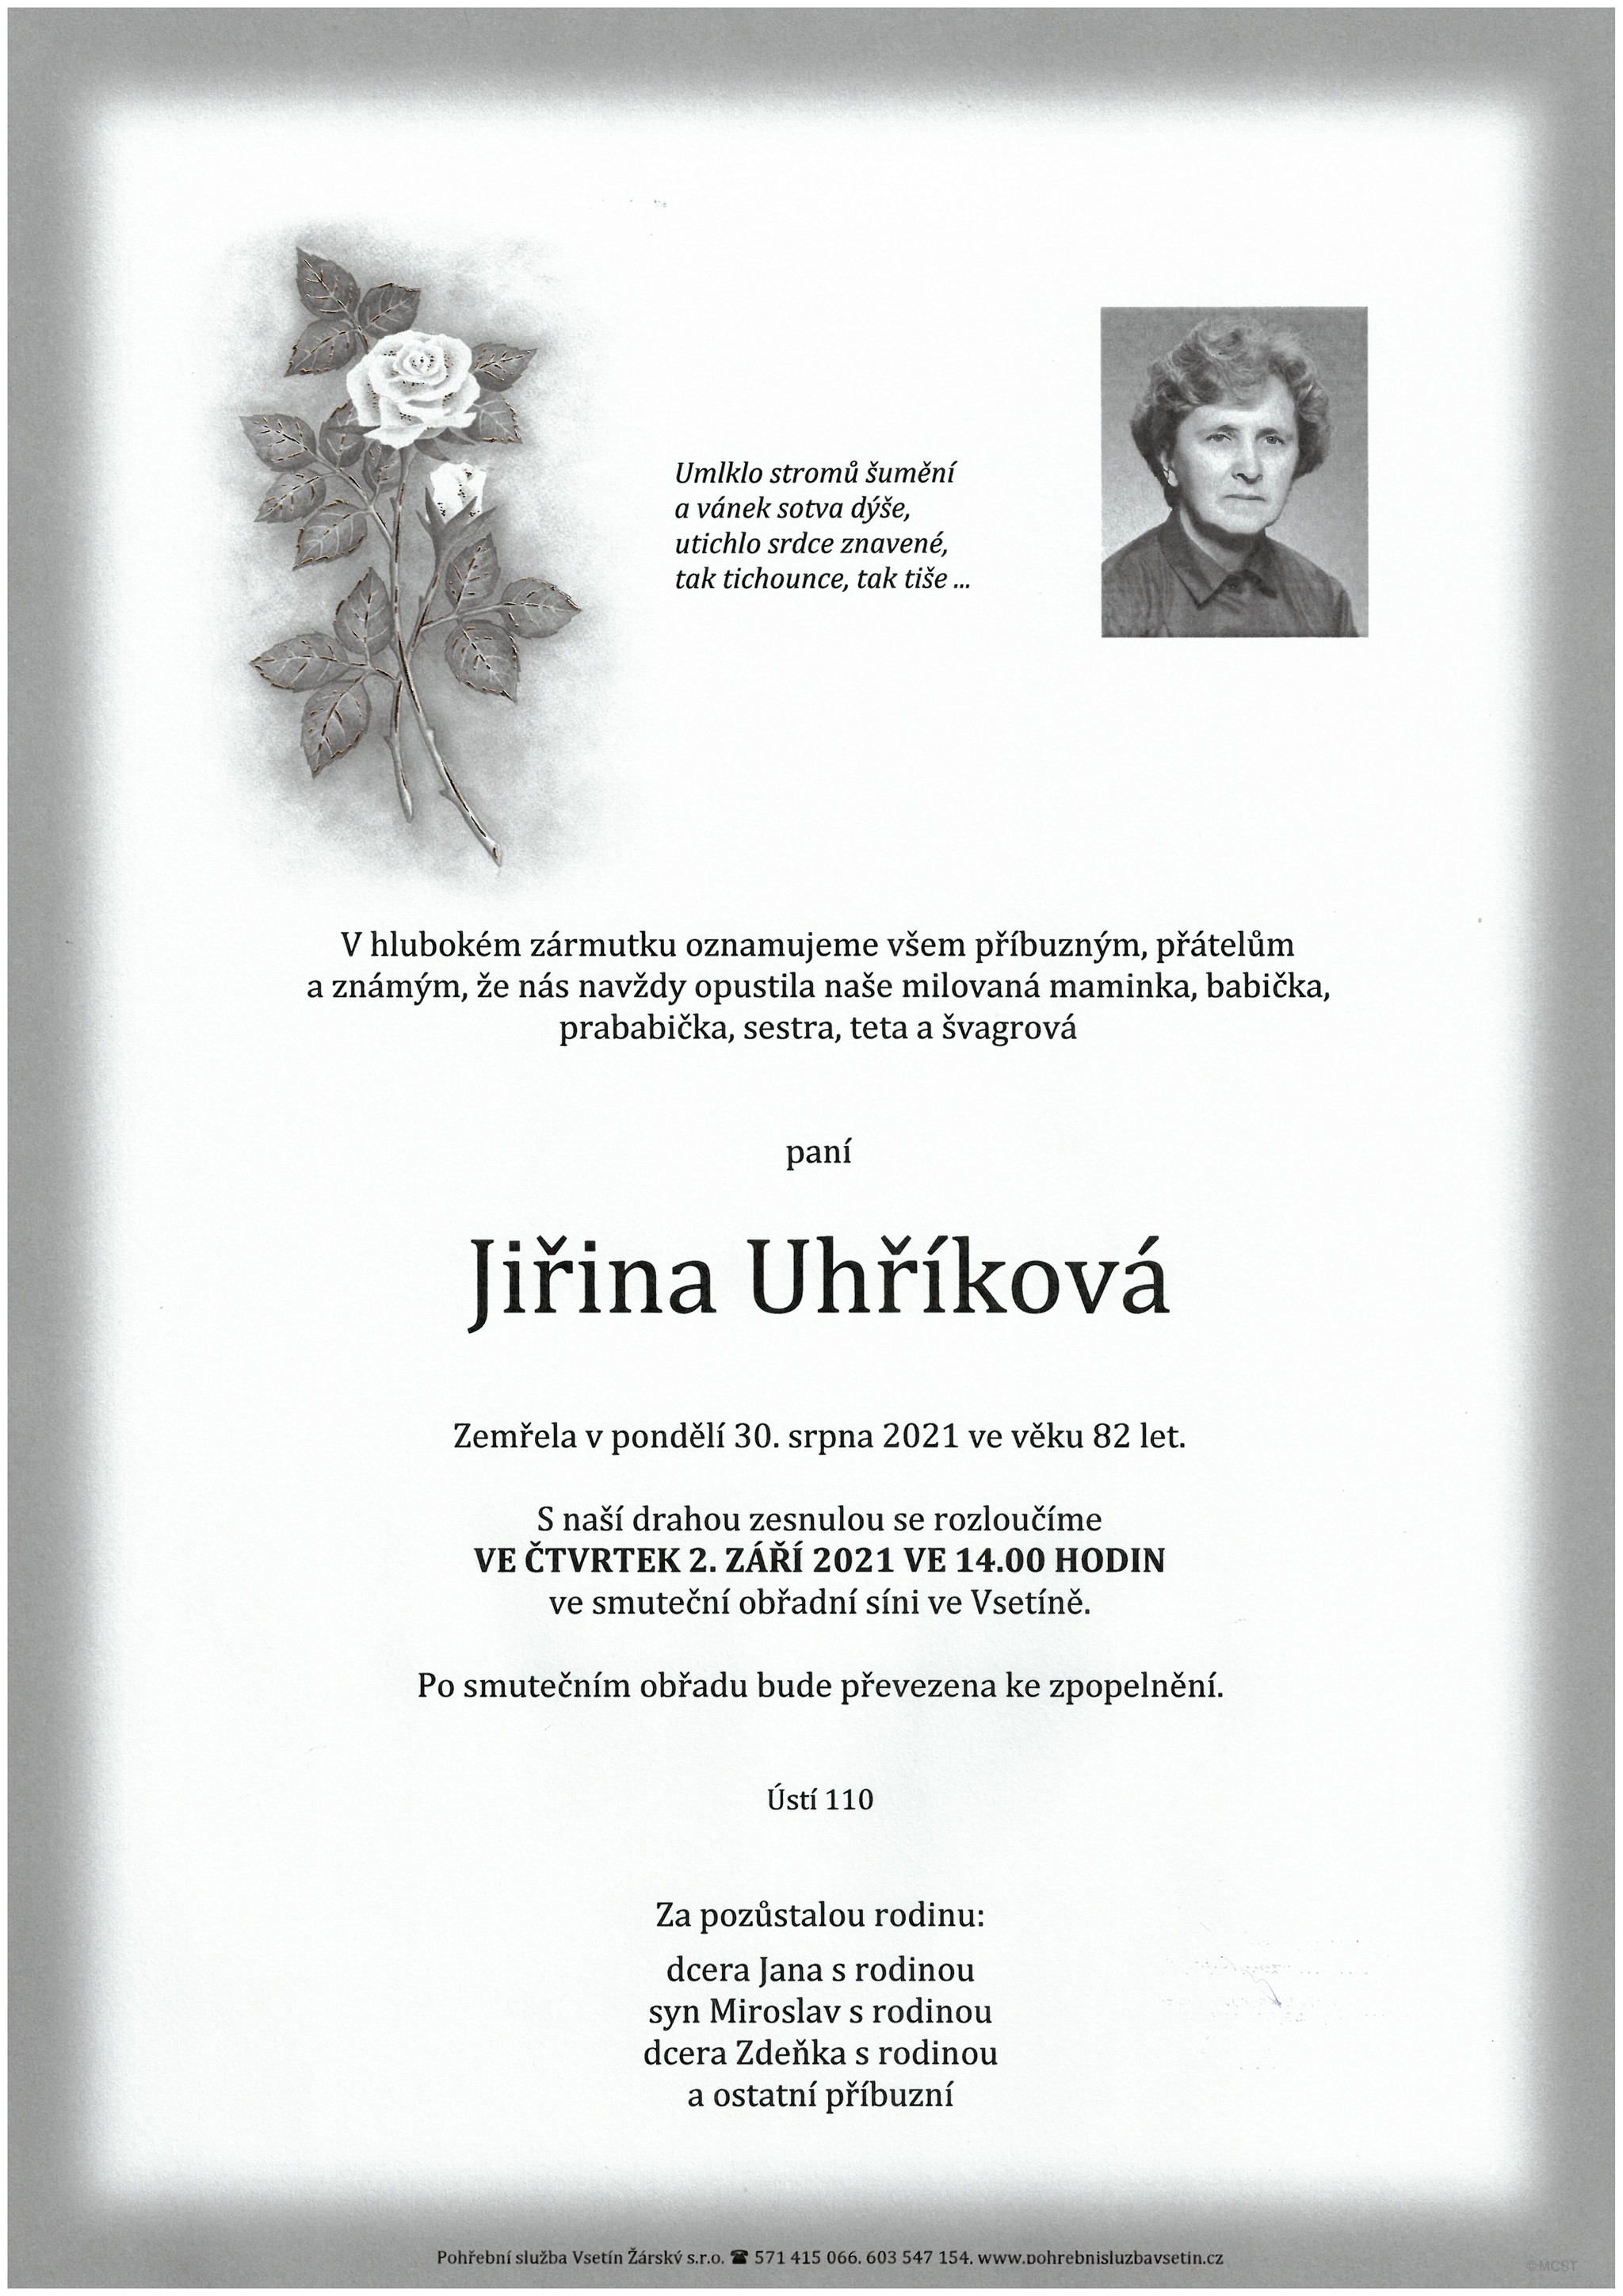 Jiřina Uhříková